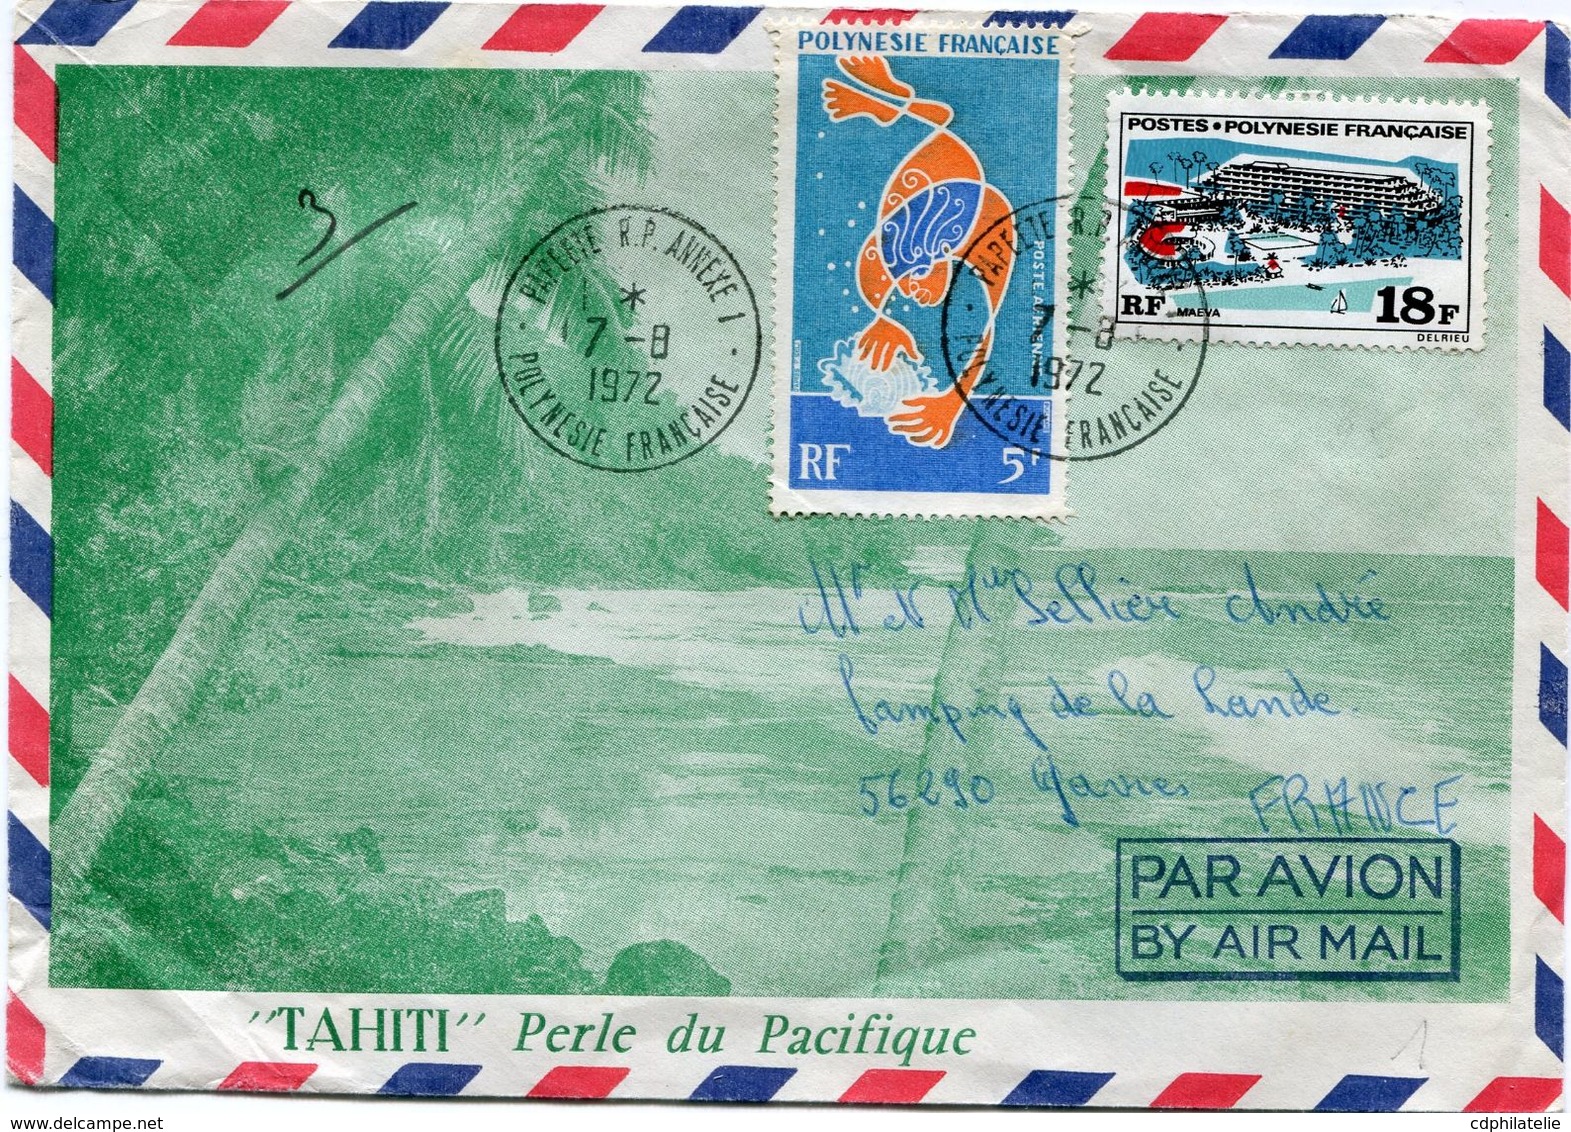 POLYNESIE FRANCAISE LETTRE PAR AVION DEPART PAPEETE 7-8-1972 POLYNESIE FRANCAISE POUR LA FRANCE - Covers & Documents